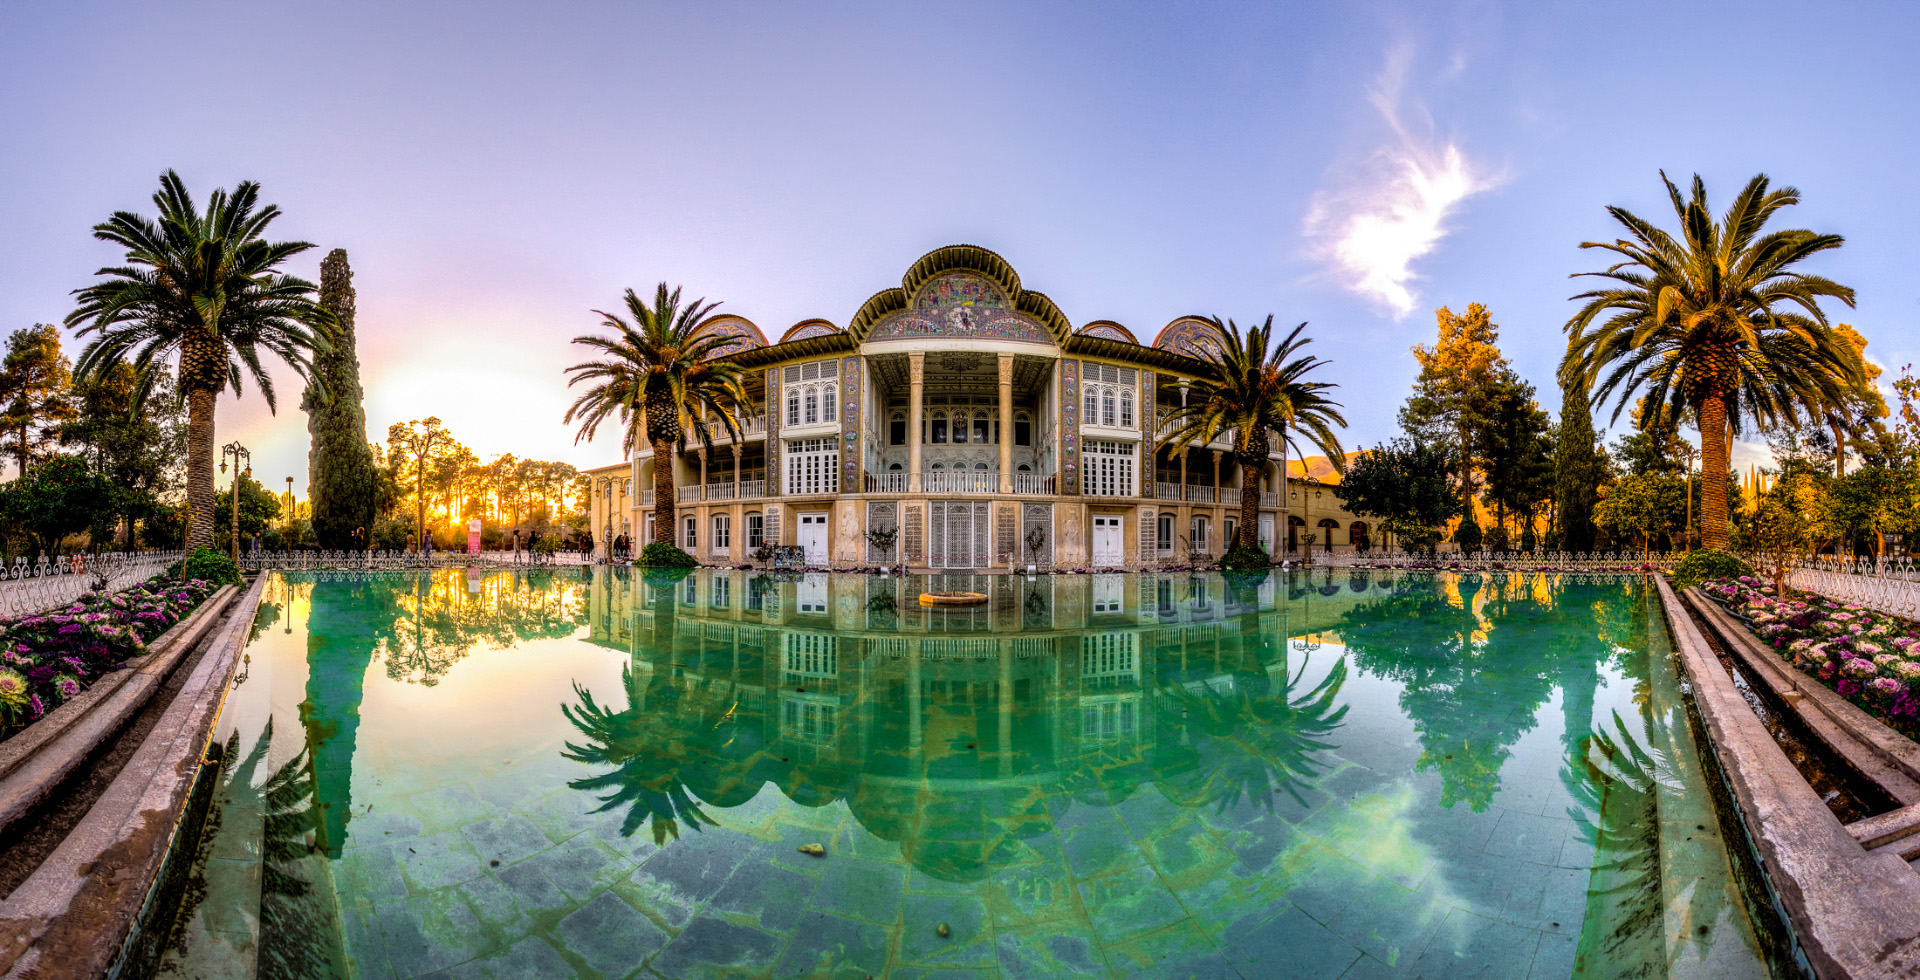 باغ جهان نما، بهشت کوچک زمین شهر شیراز + عکس